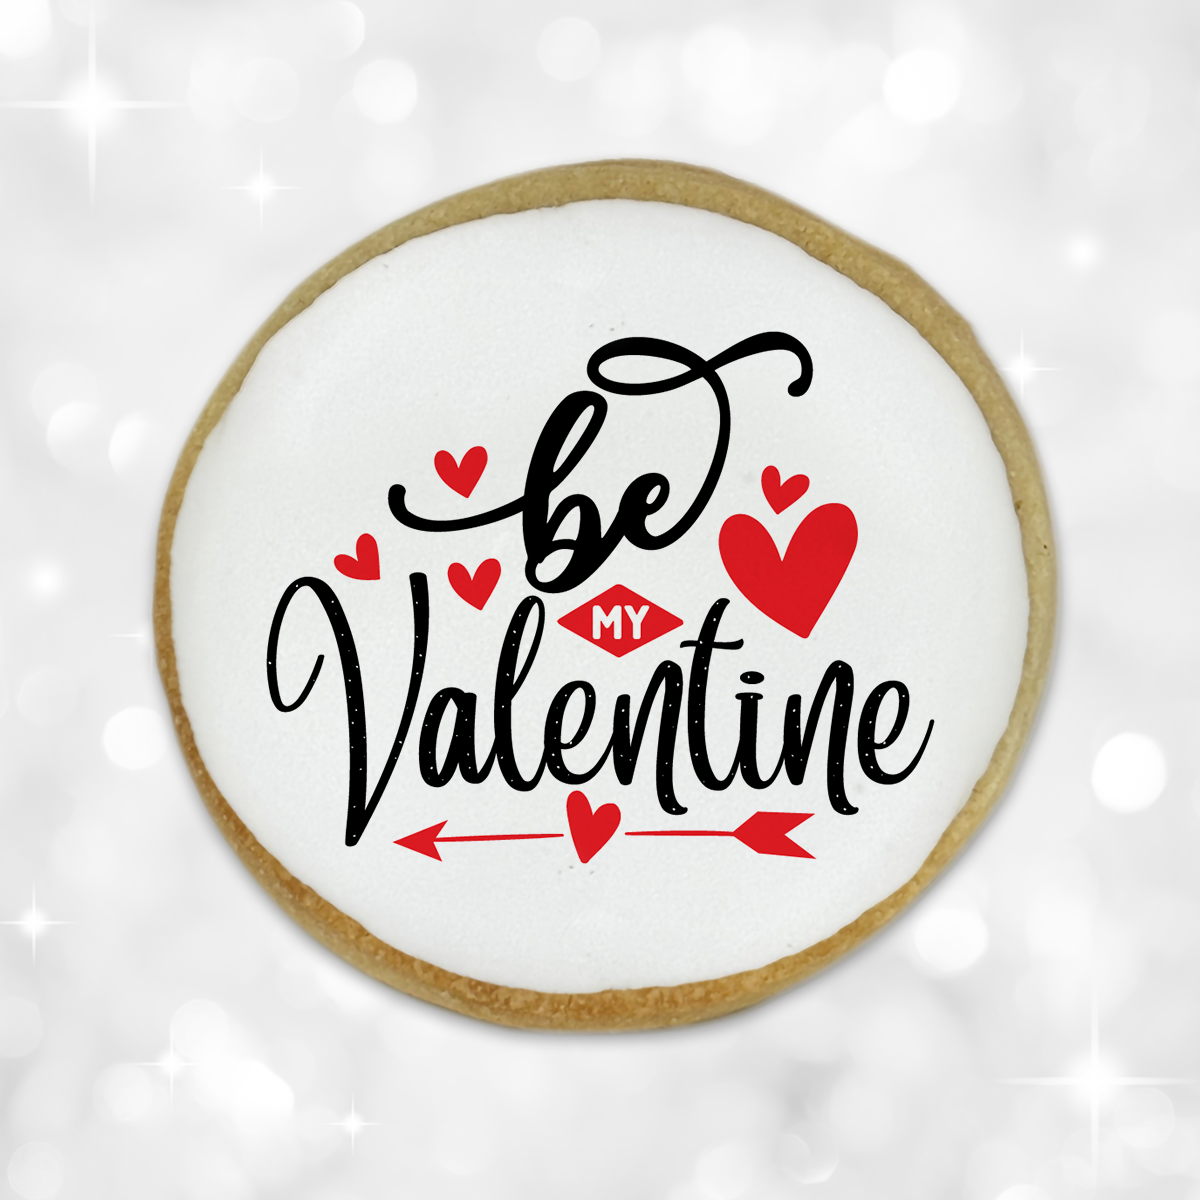 Valentine's Day "Be My Valentine" Round Cookies